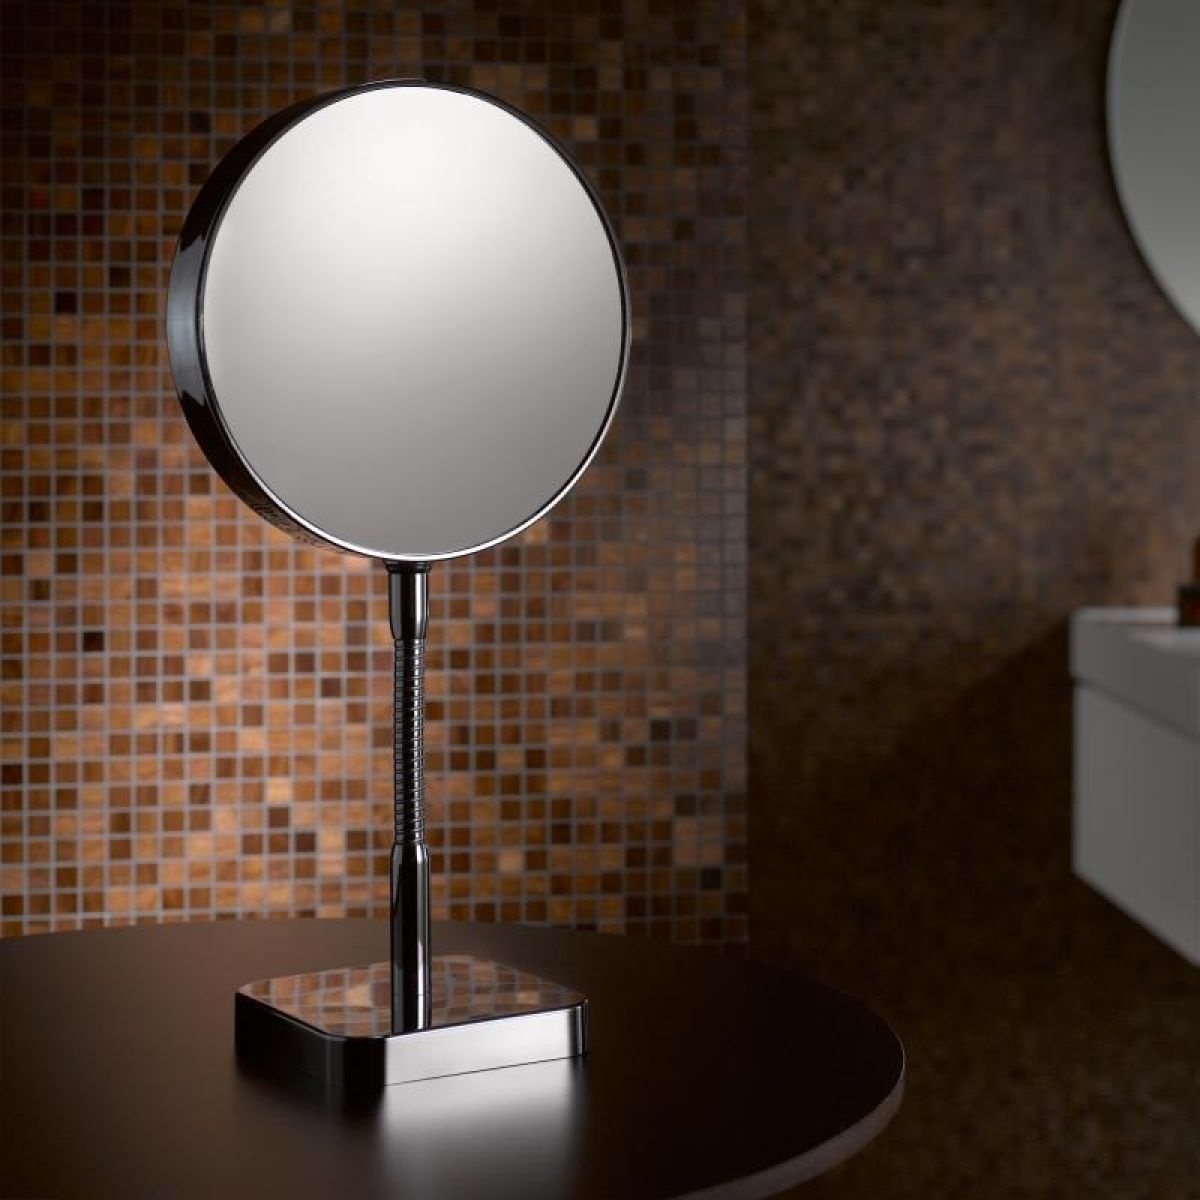 Косметическое зеркало EMCO Spiegel 1095 001 16 круглое настольное металлическое хром